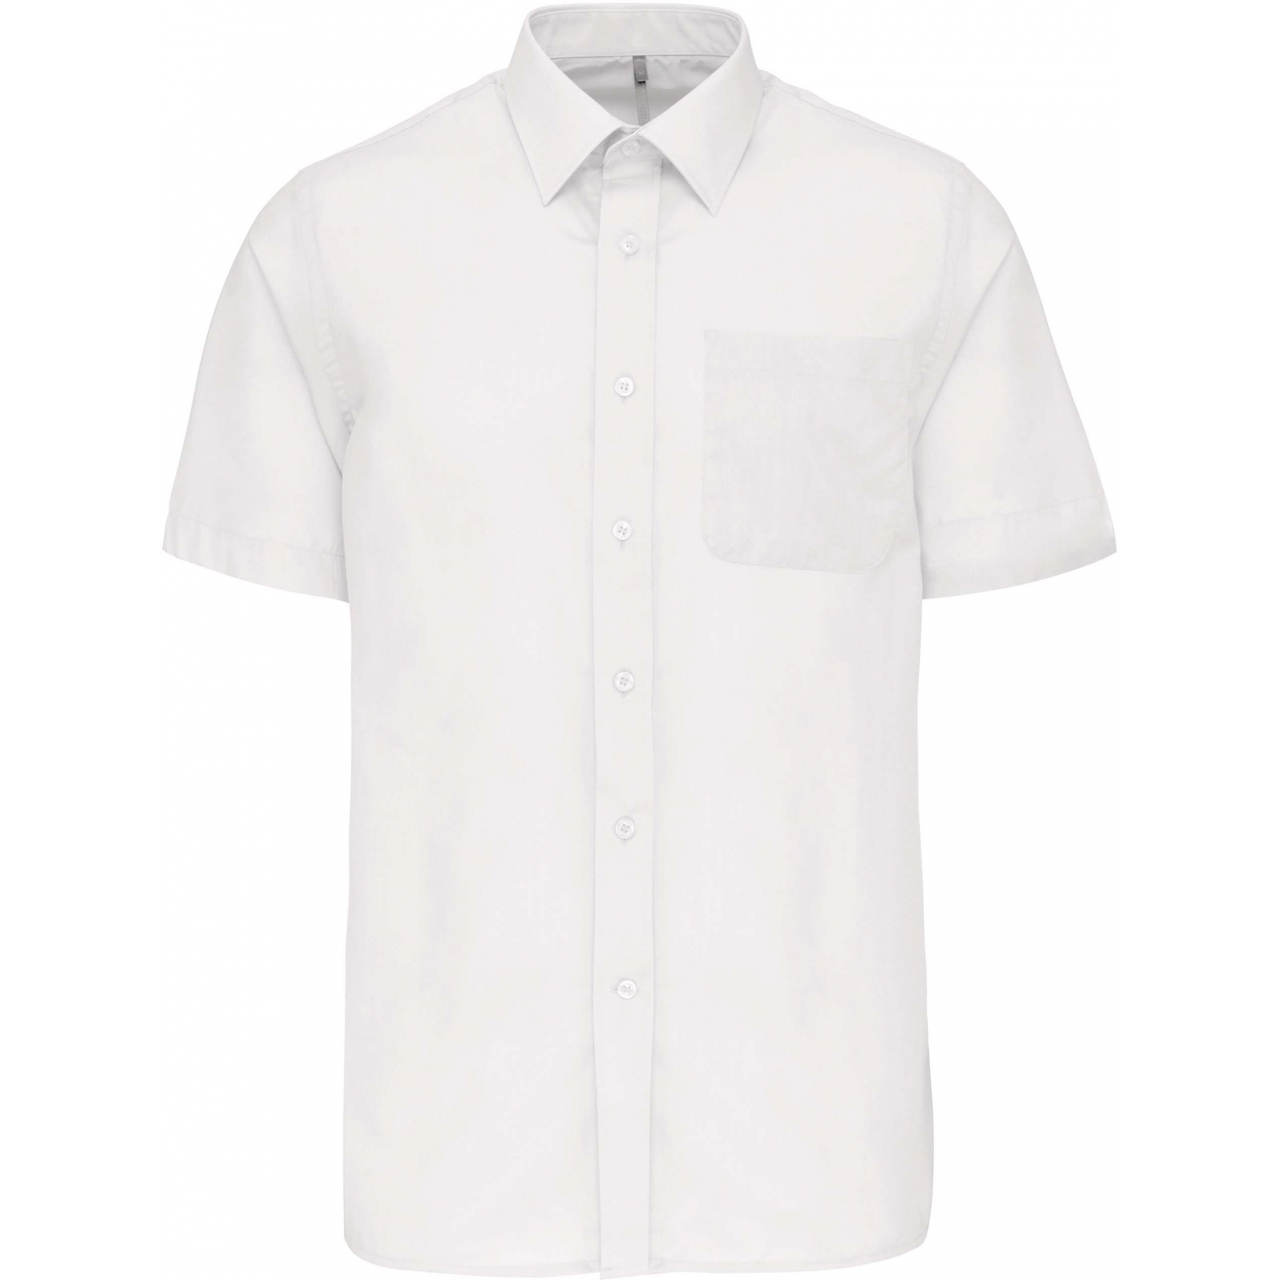 Pánská košile s krátkým rukávem Kariban ACE - bílá, 4XL